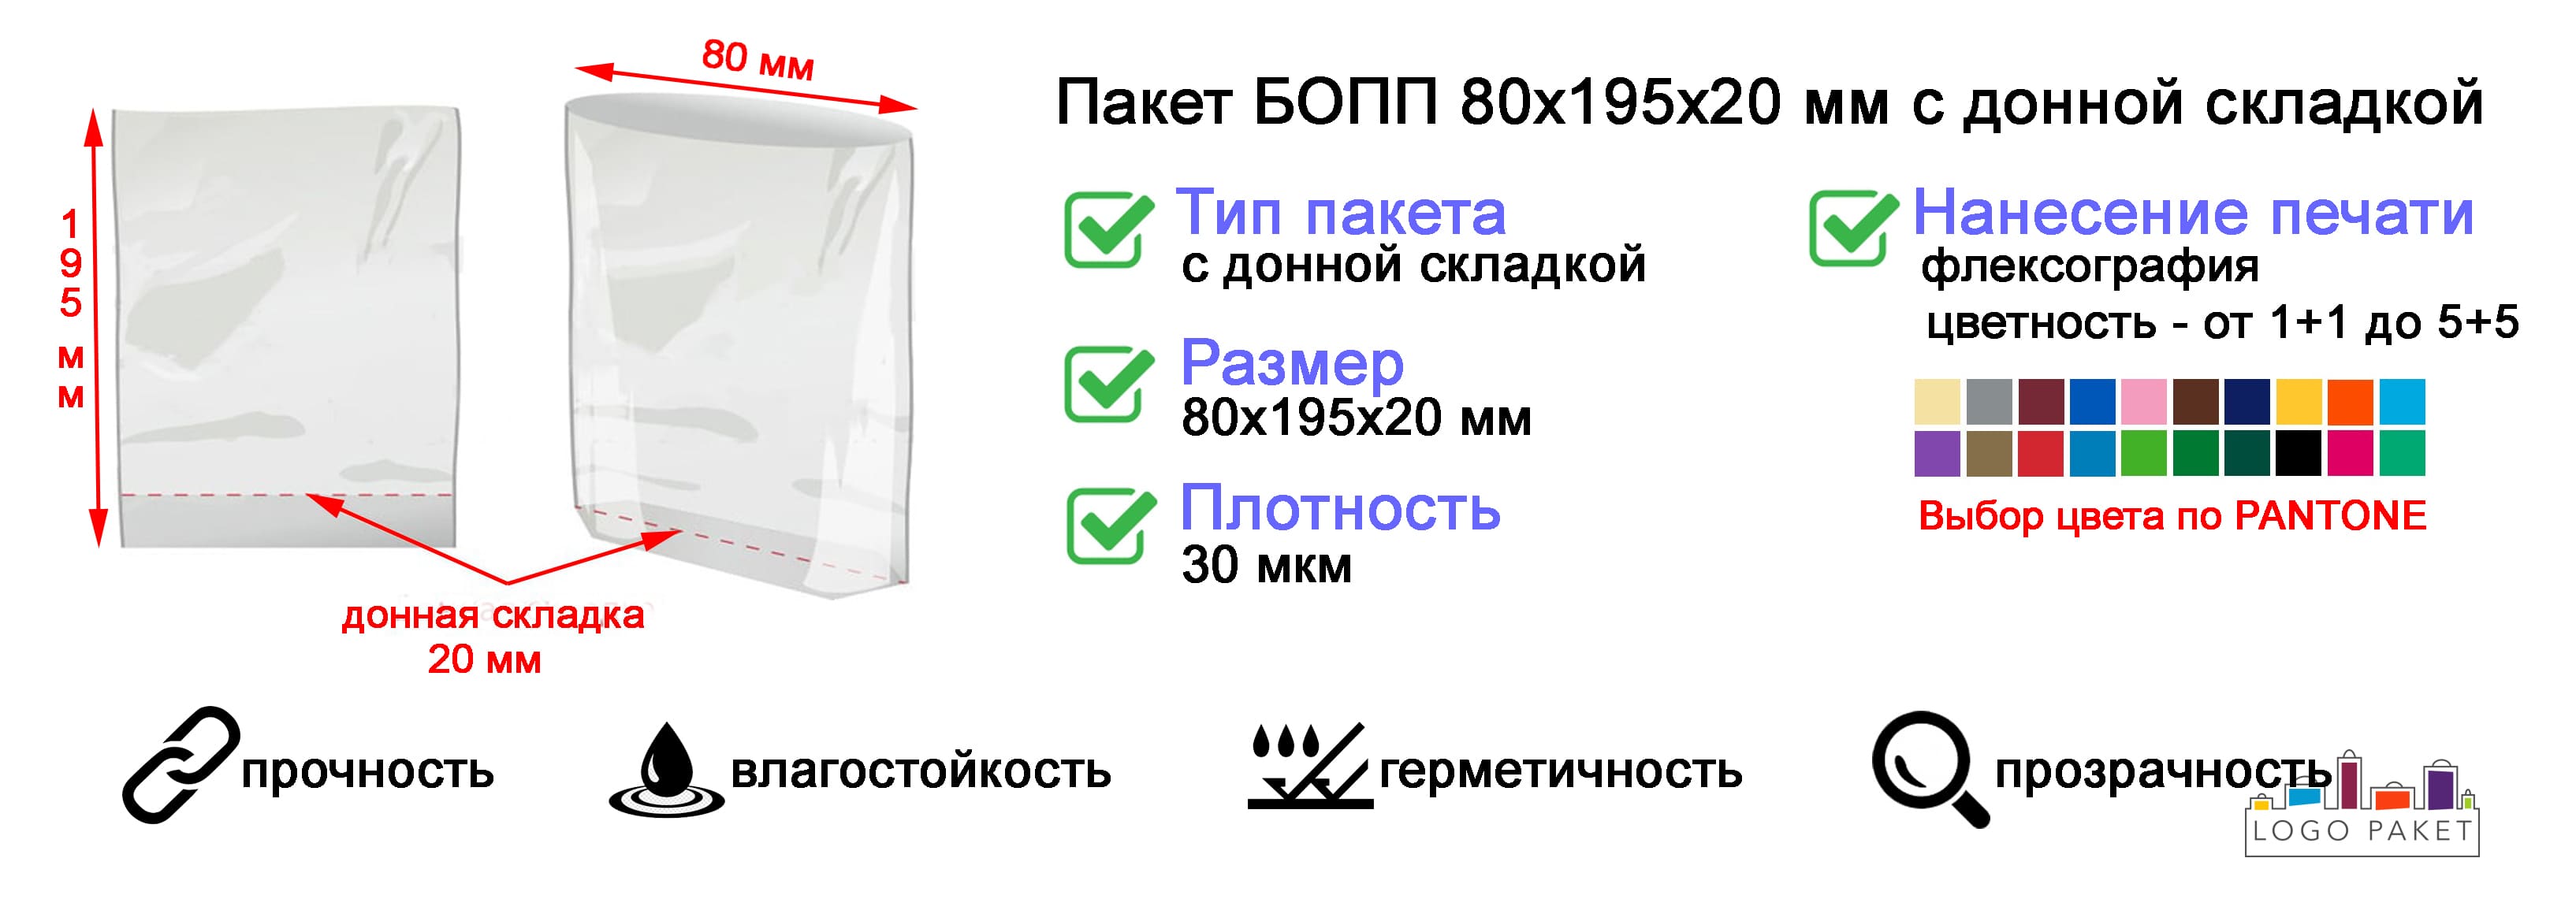 Пакет БОПП 80х195х20 мм с донной складкой инфографика.